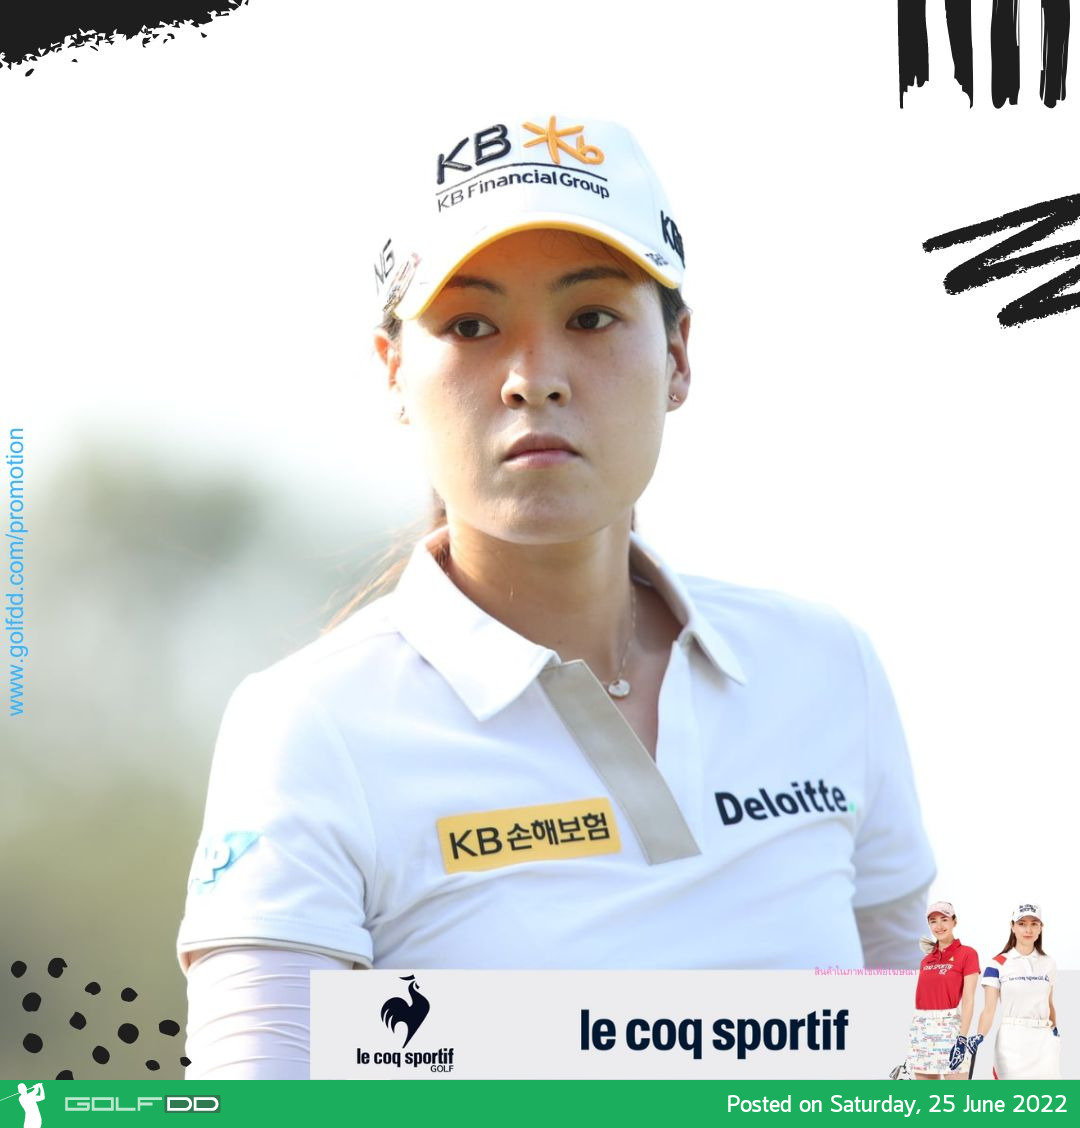 ชุน อิน กี  ขึ้นนำรอบแรกกอล์ฟ  KPMG Women's PGA Championship กอล์ฟเมเจอร์รายการที่ 3 ของปี 